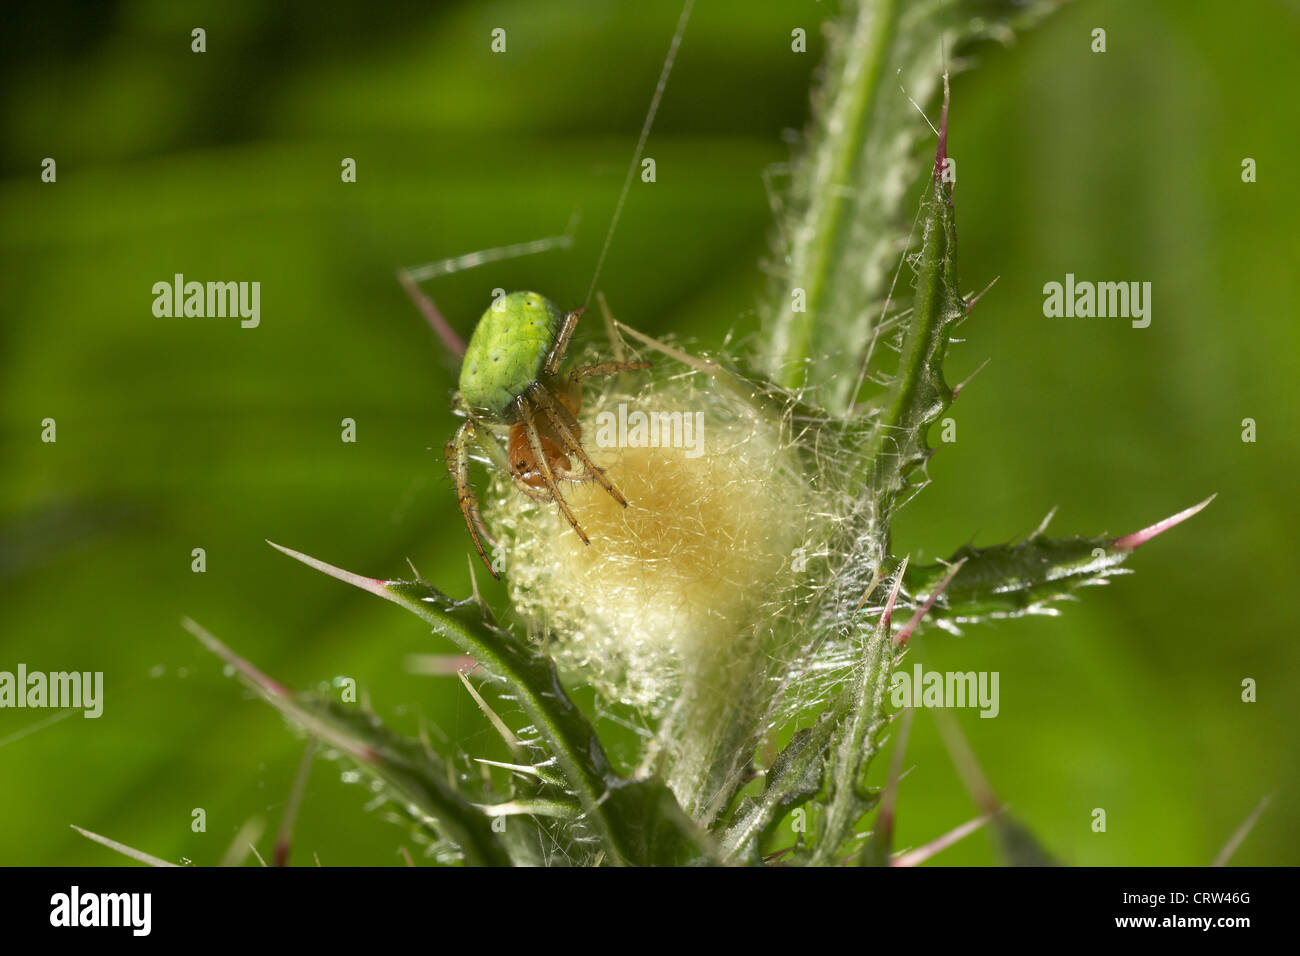 Araniella cucurbitina araignée concombre, ou Vert Orb Weaver, avec son oeuf cas, UK Banque D'Images